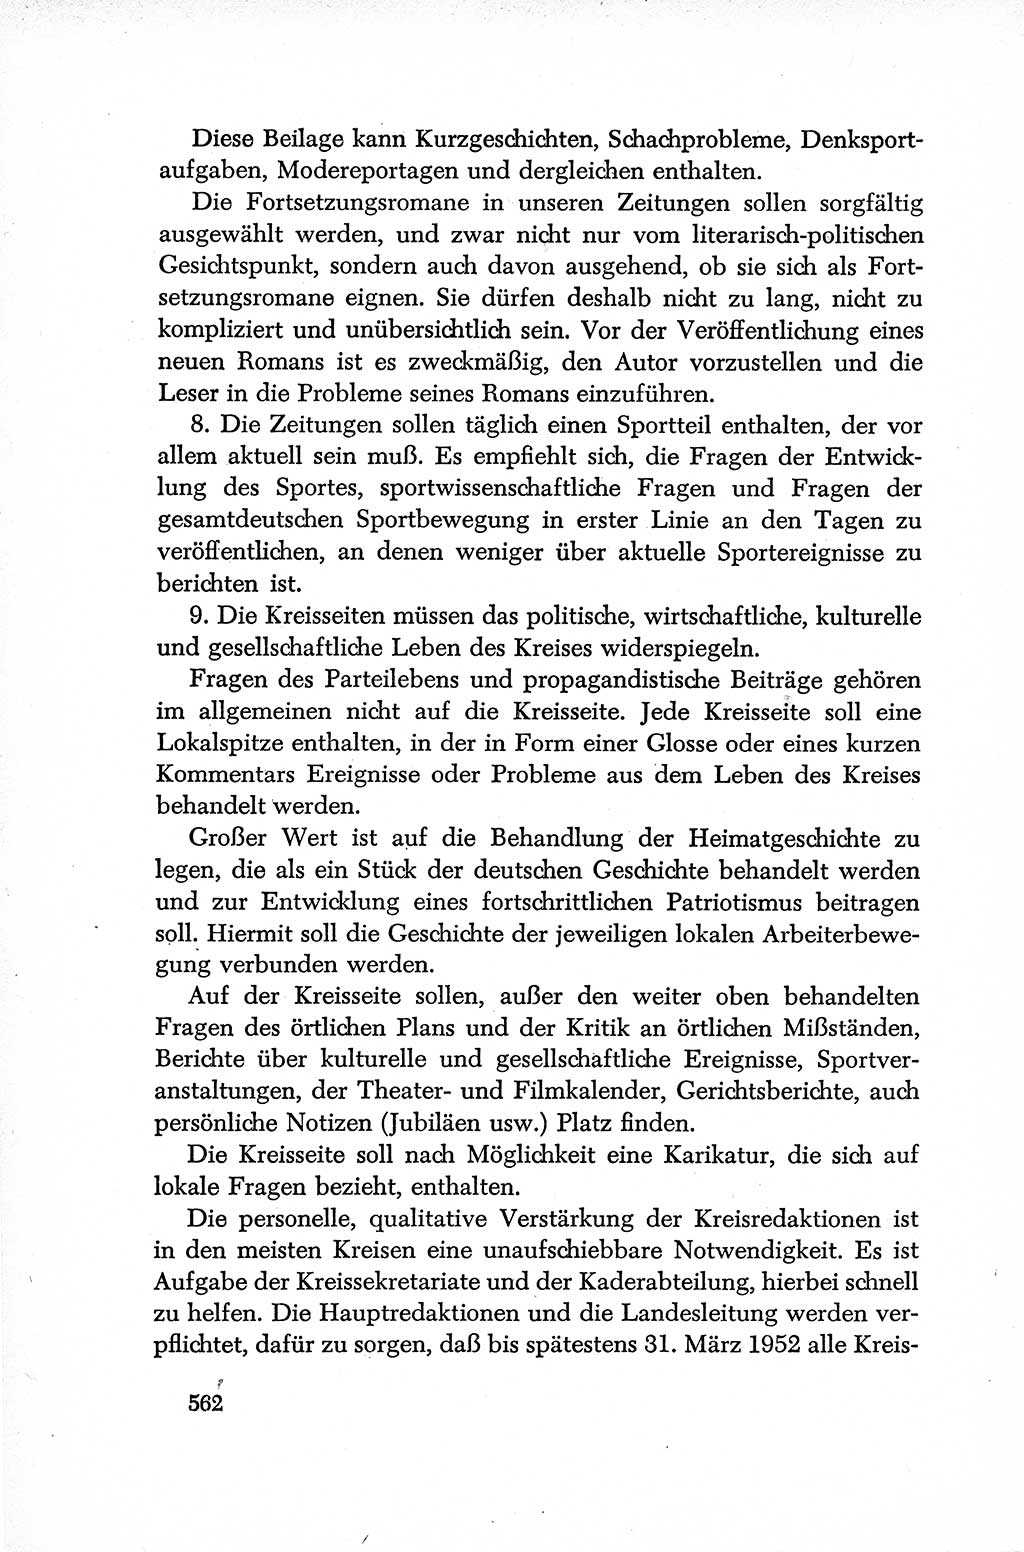 Dokumente der Sozialistischen Einheitspartei Deutschlands (SED) [Deutsche Demokratische Republik (DDR)] 1952-1953, Seite 562 (Dok. SED DDR 1952-1953, S. 562)